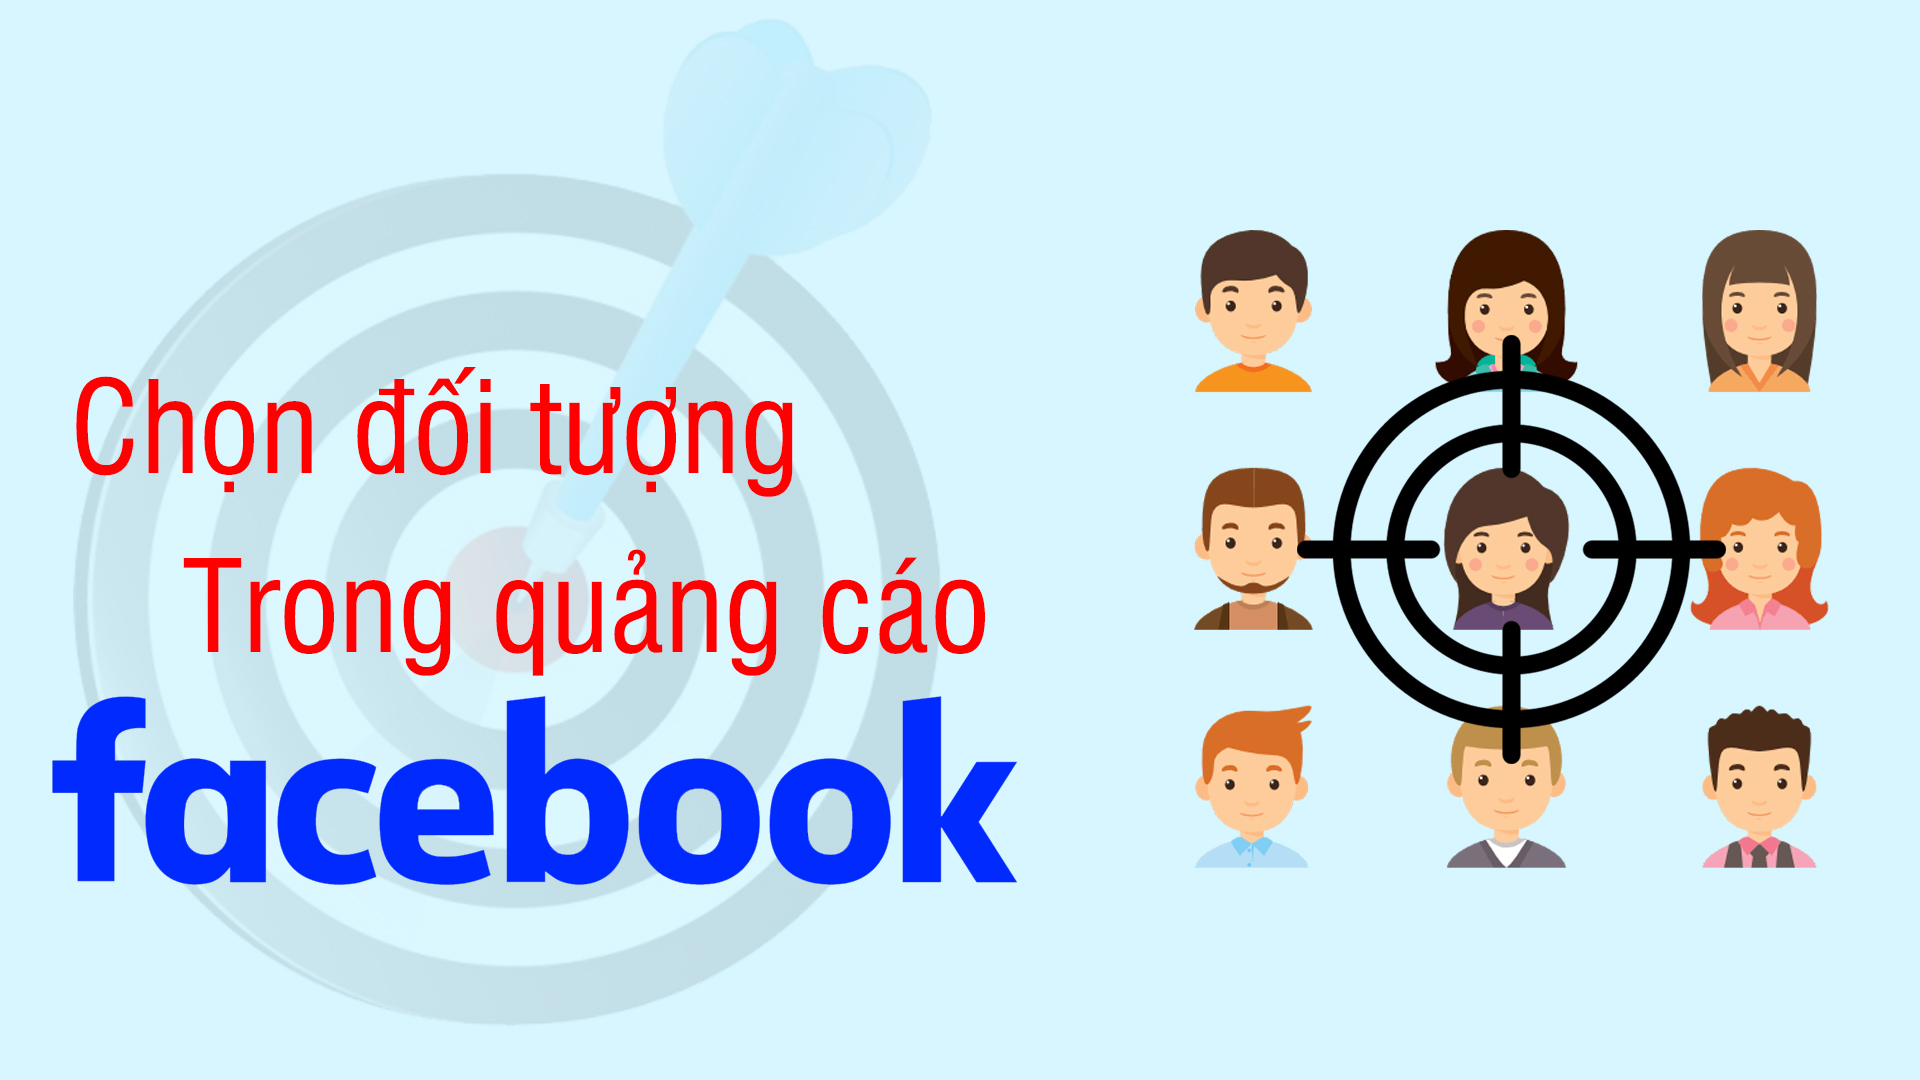 chon_doi_tuong_quang_cao_facebook.jpg